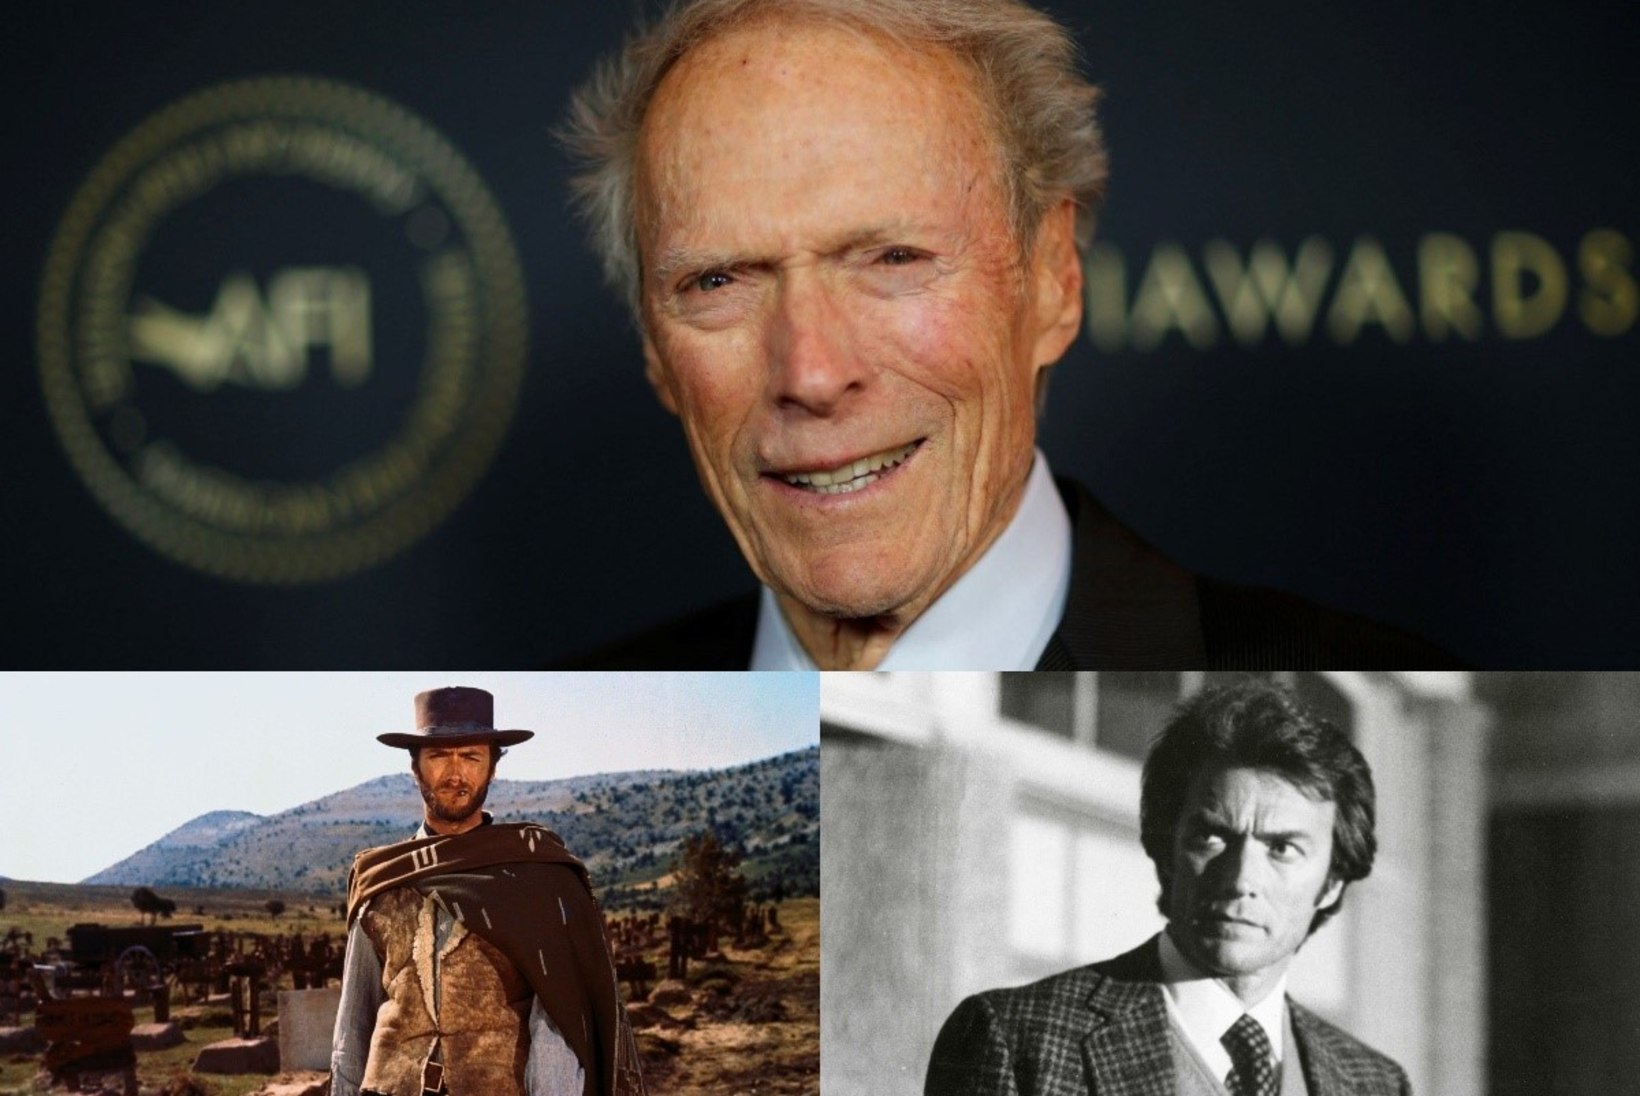 90aastaseks saanud Clint Eastwood: „Vananemine võib täitsa lõbus olla, kui võtad seda rahulikult.“